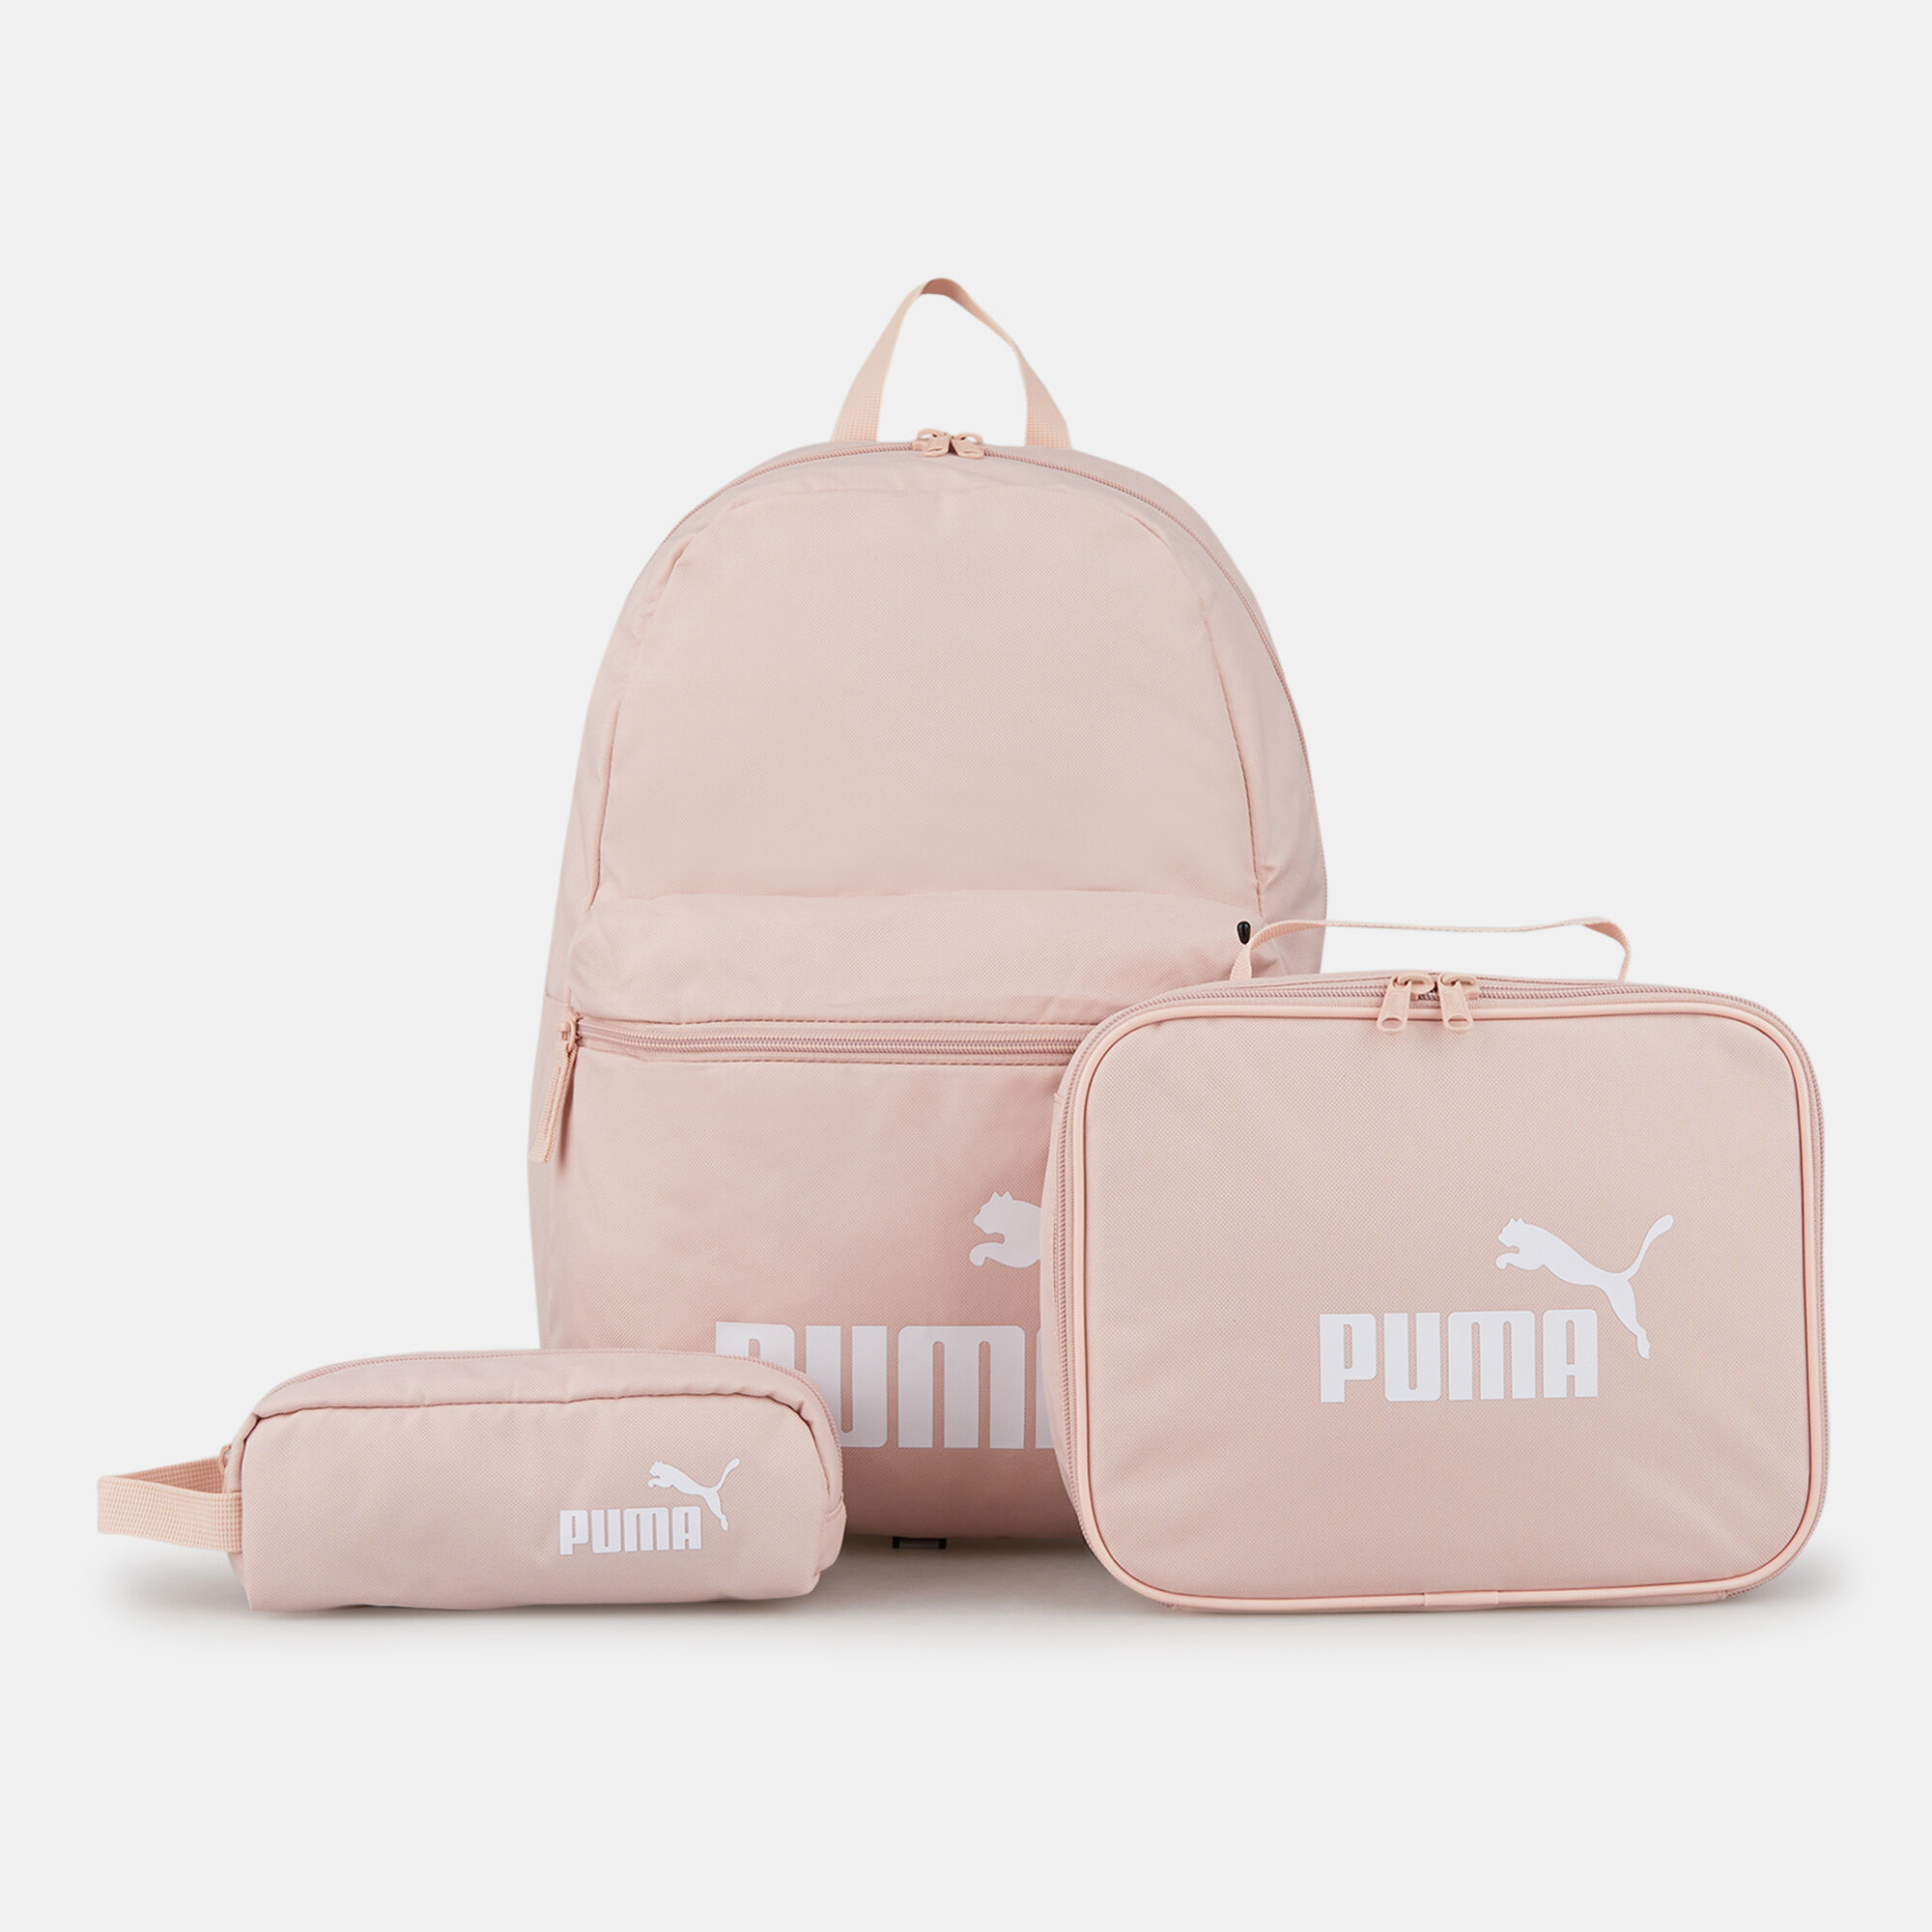 Bags & Backpacks | Original Puma Pink Laptop Bag For Sale | Freeup